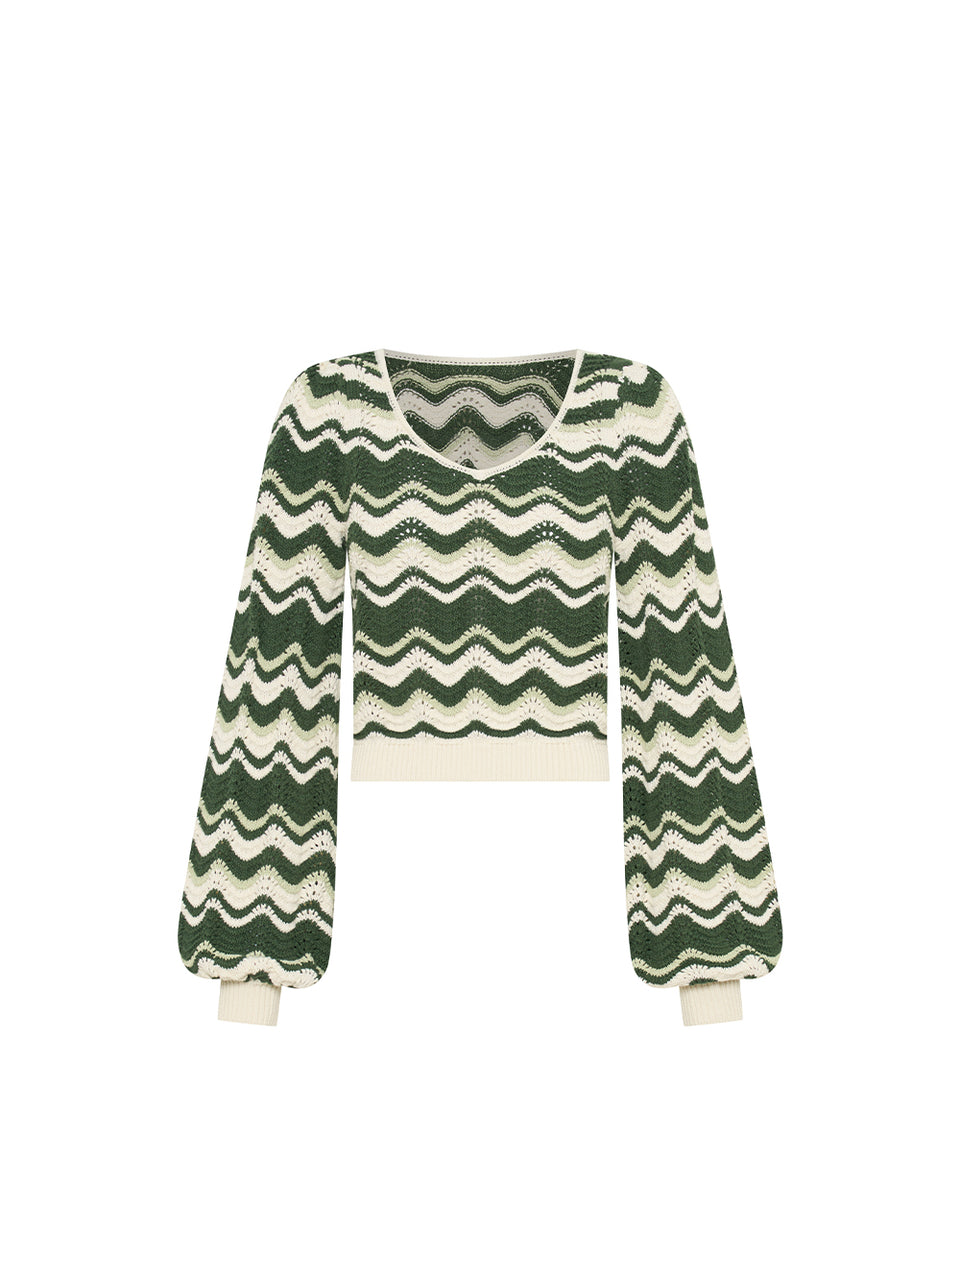 Marcella Knit Top KIVARI | Green and cream knit top